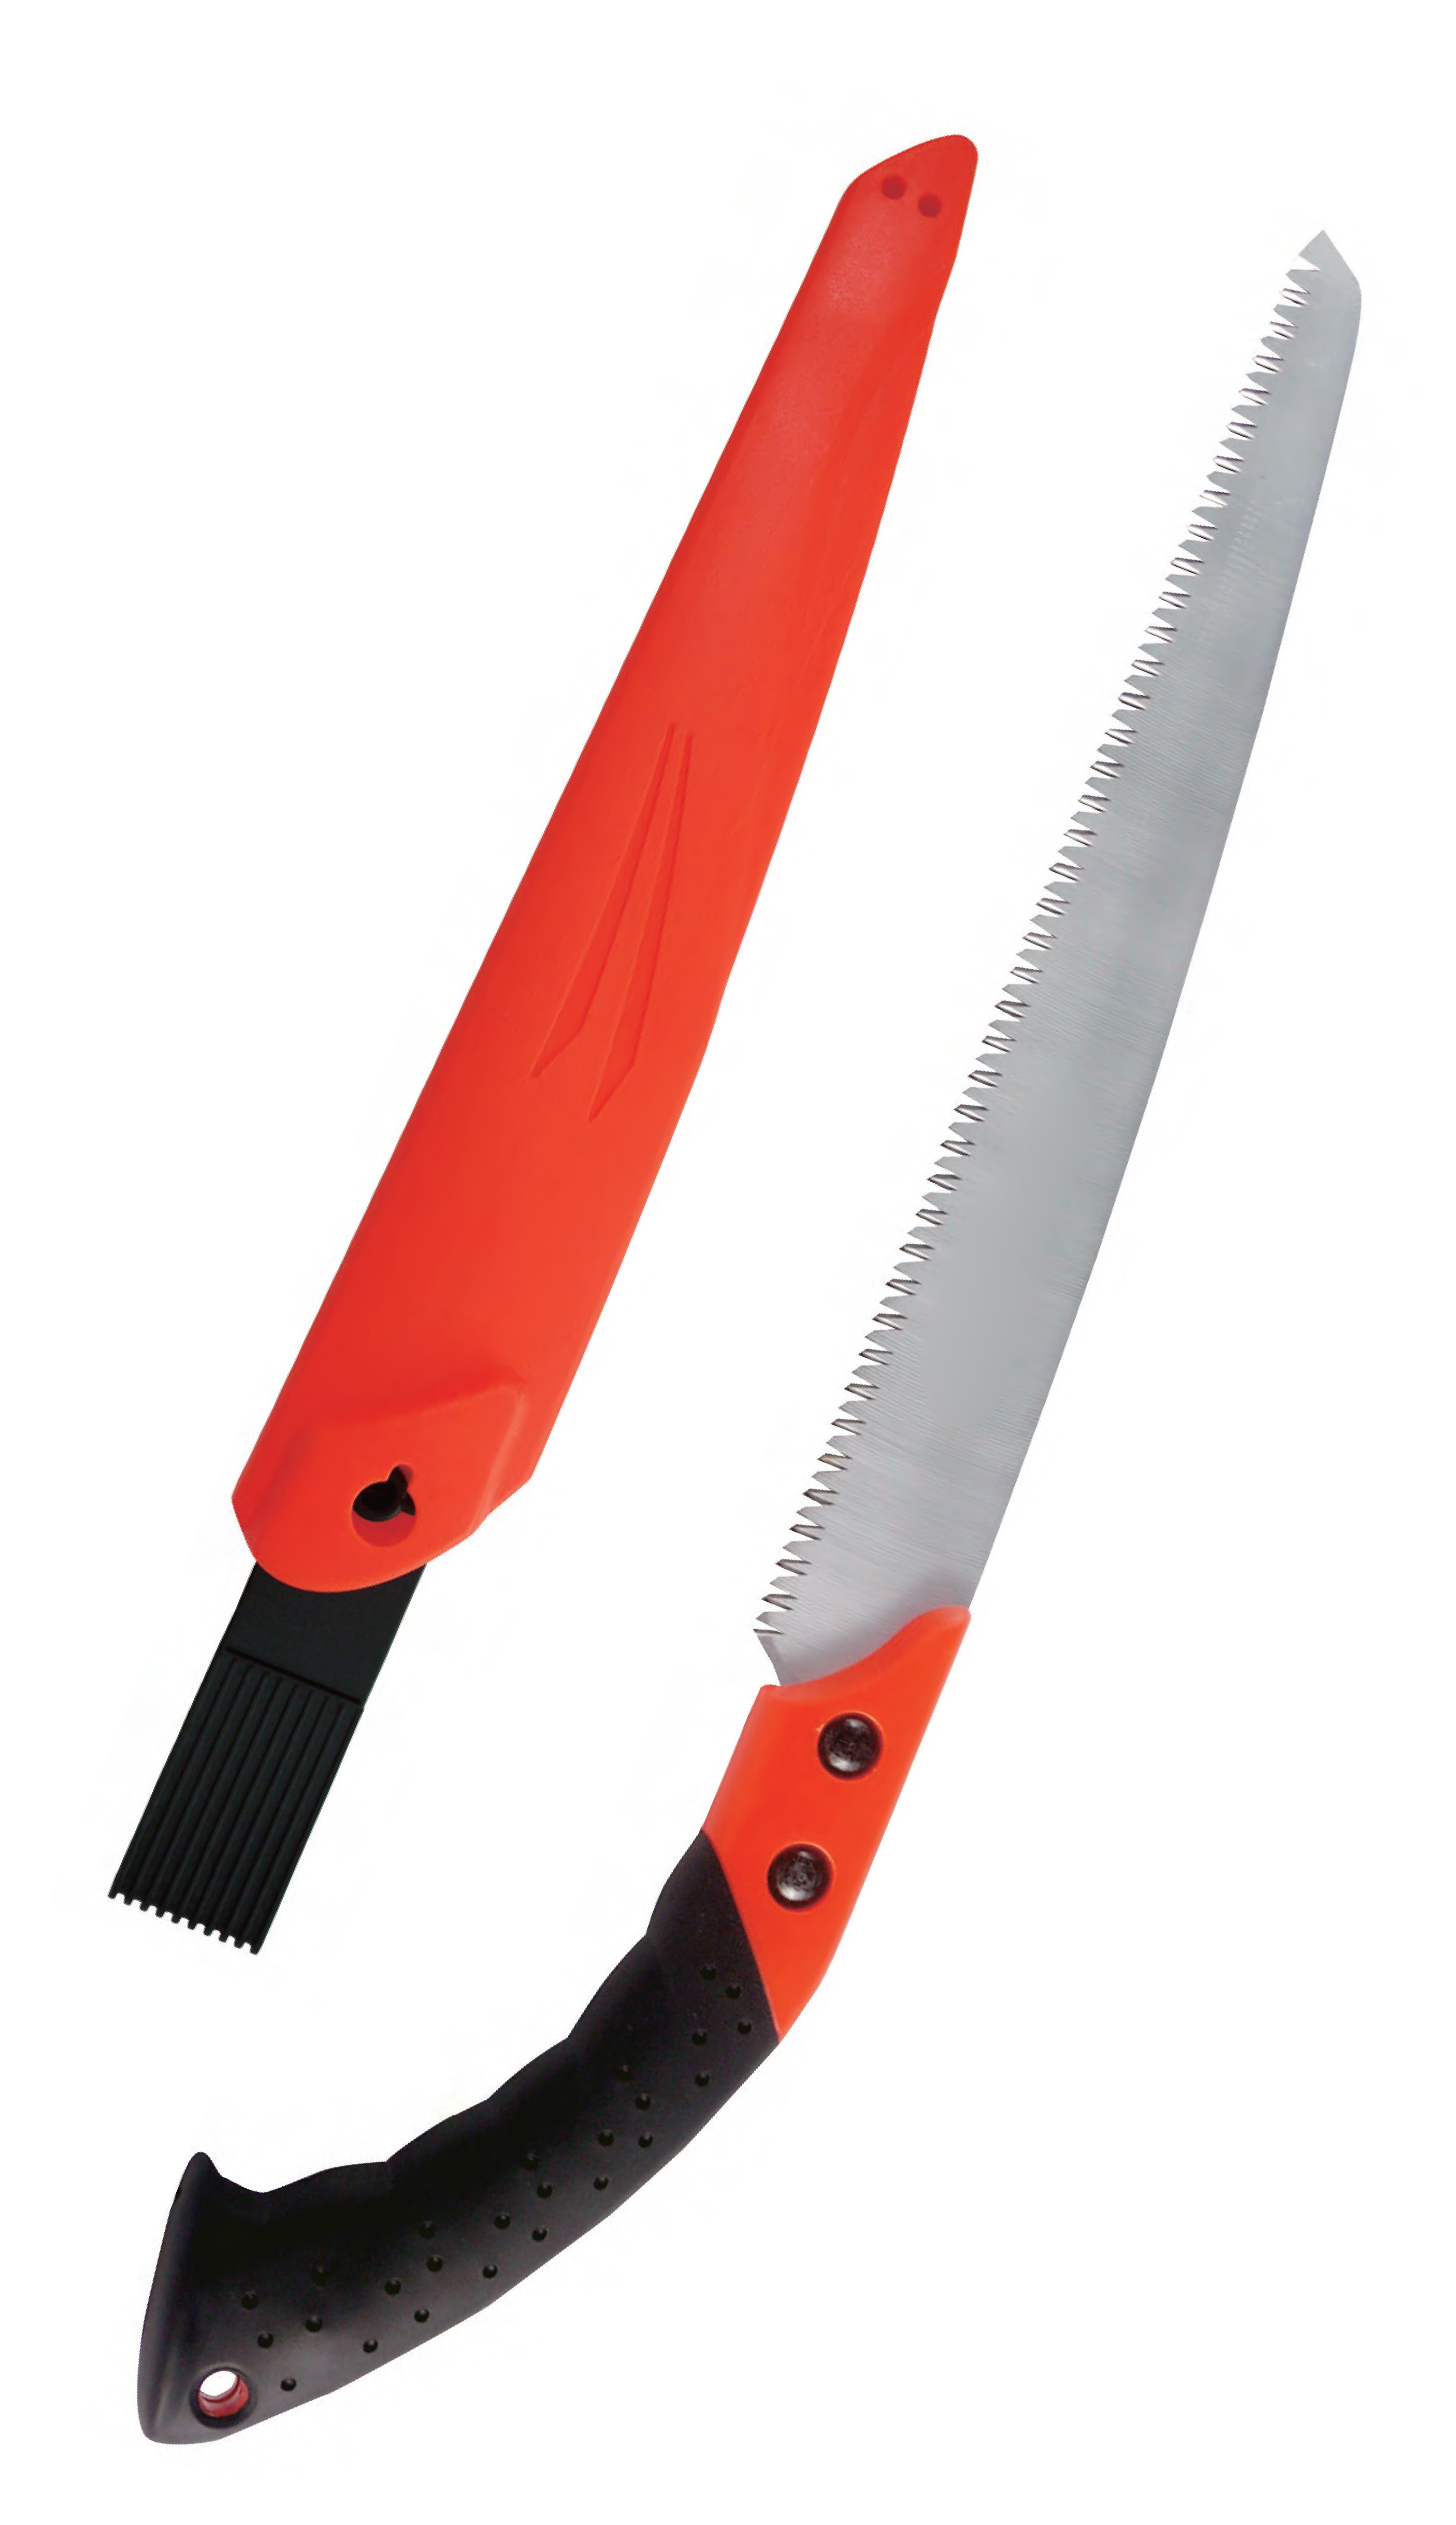 Zenport Saw S250 10 inch Straight Blade w/Sheath